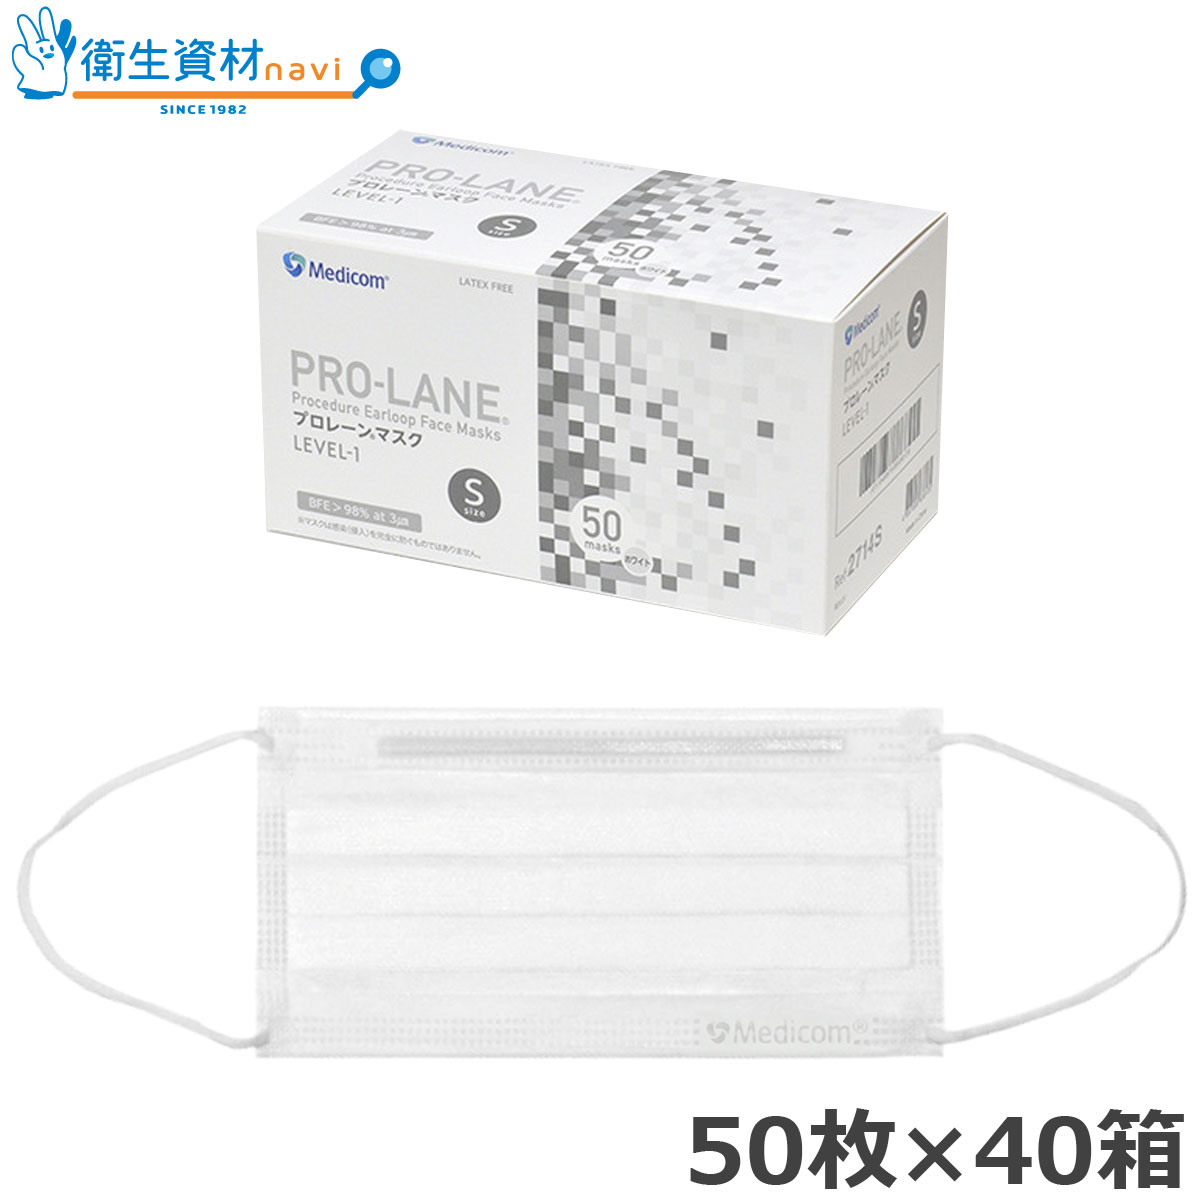 PRO-LANE(プロレーン) マスク LEVEL-1 ホワイト Sサイズ PLE002714S (2,000枚)